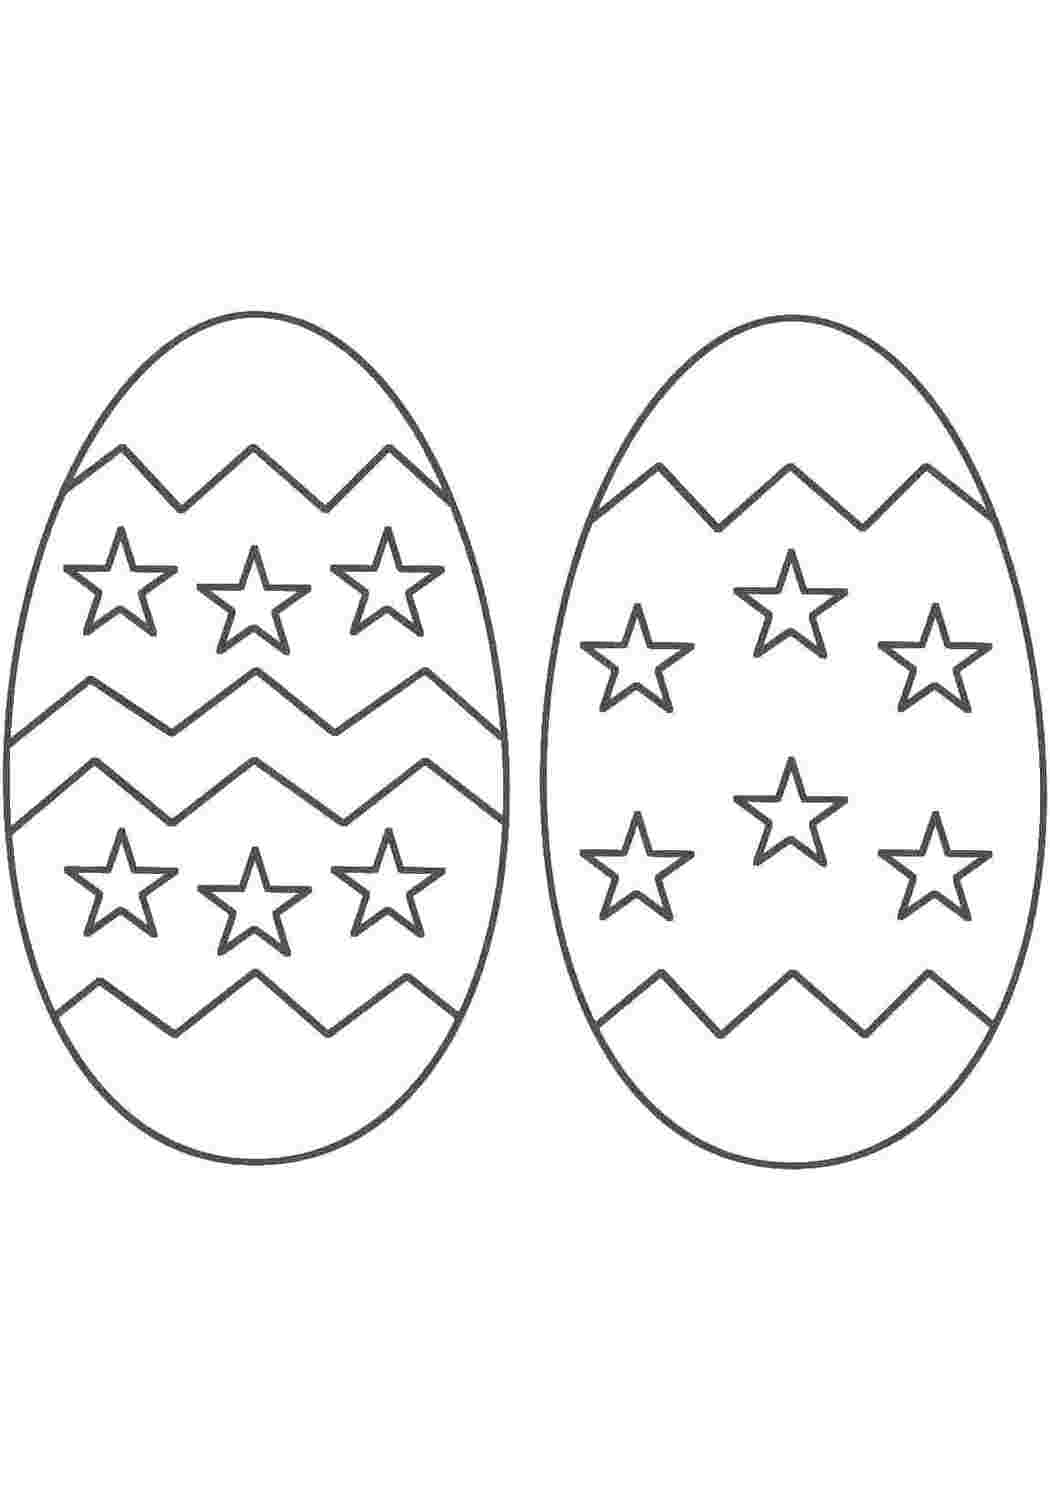 Пасхальное яйцо раскраска